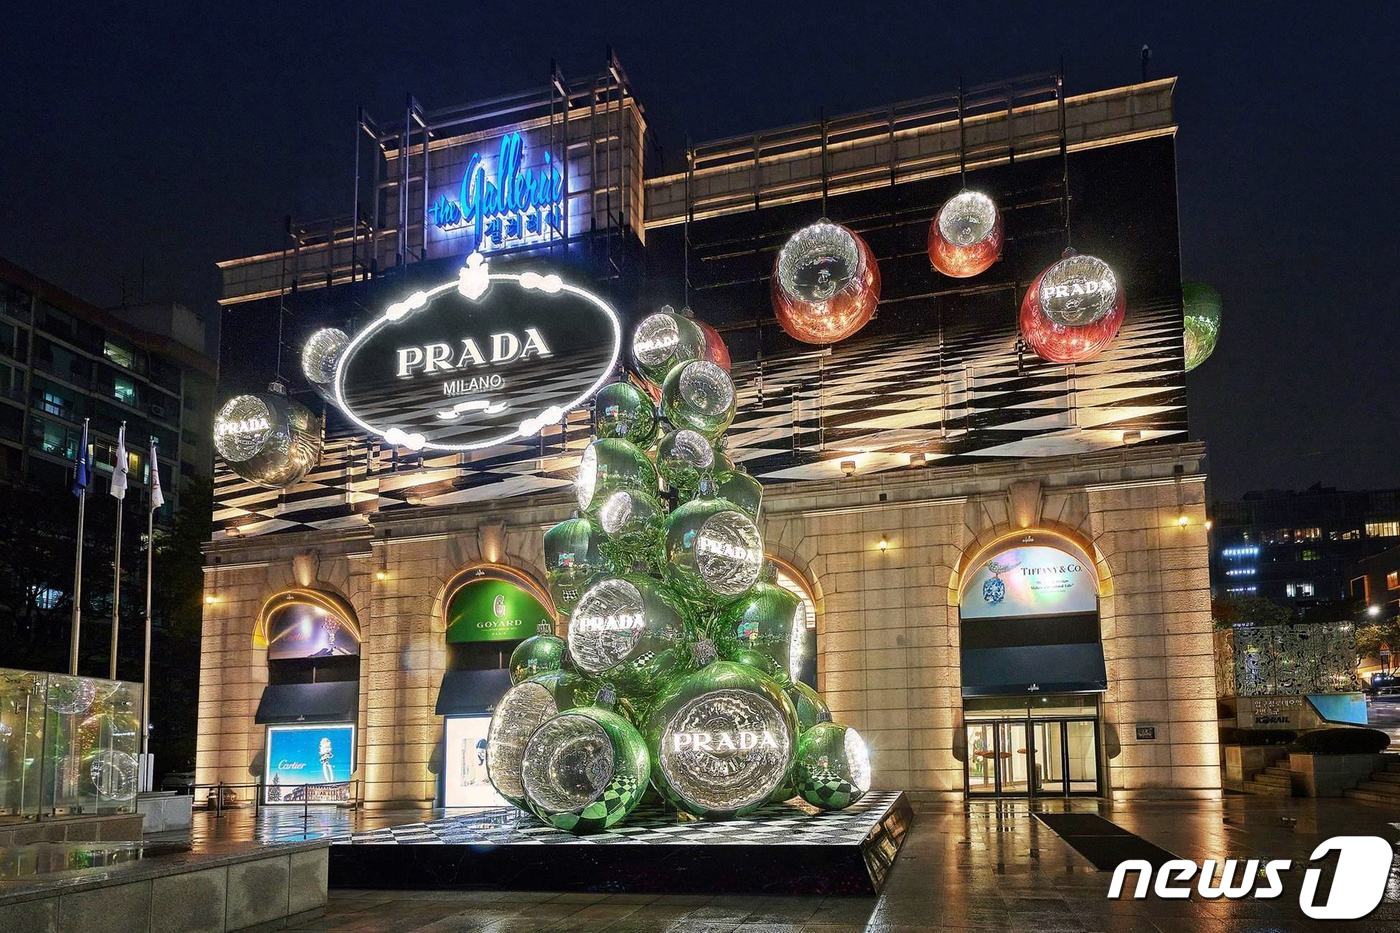 (서울=뉴스1) = 갤러리아백화점이 연말을 맞아 서울 명품관에서 크리스마스 트리를 비롯한 외관 장식을 선보인다고 20일 밝혔다. 갤러리아의 올해 크리스마스 조형물은 이탈리아 럭셔리 …